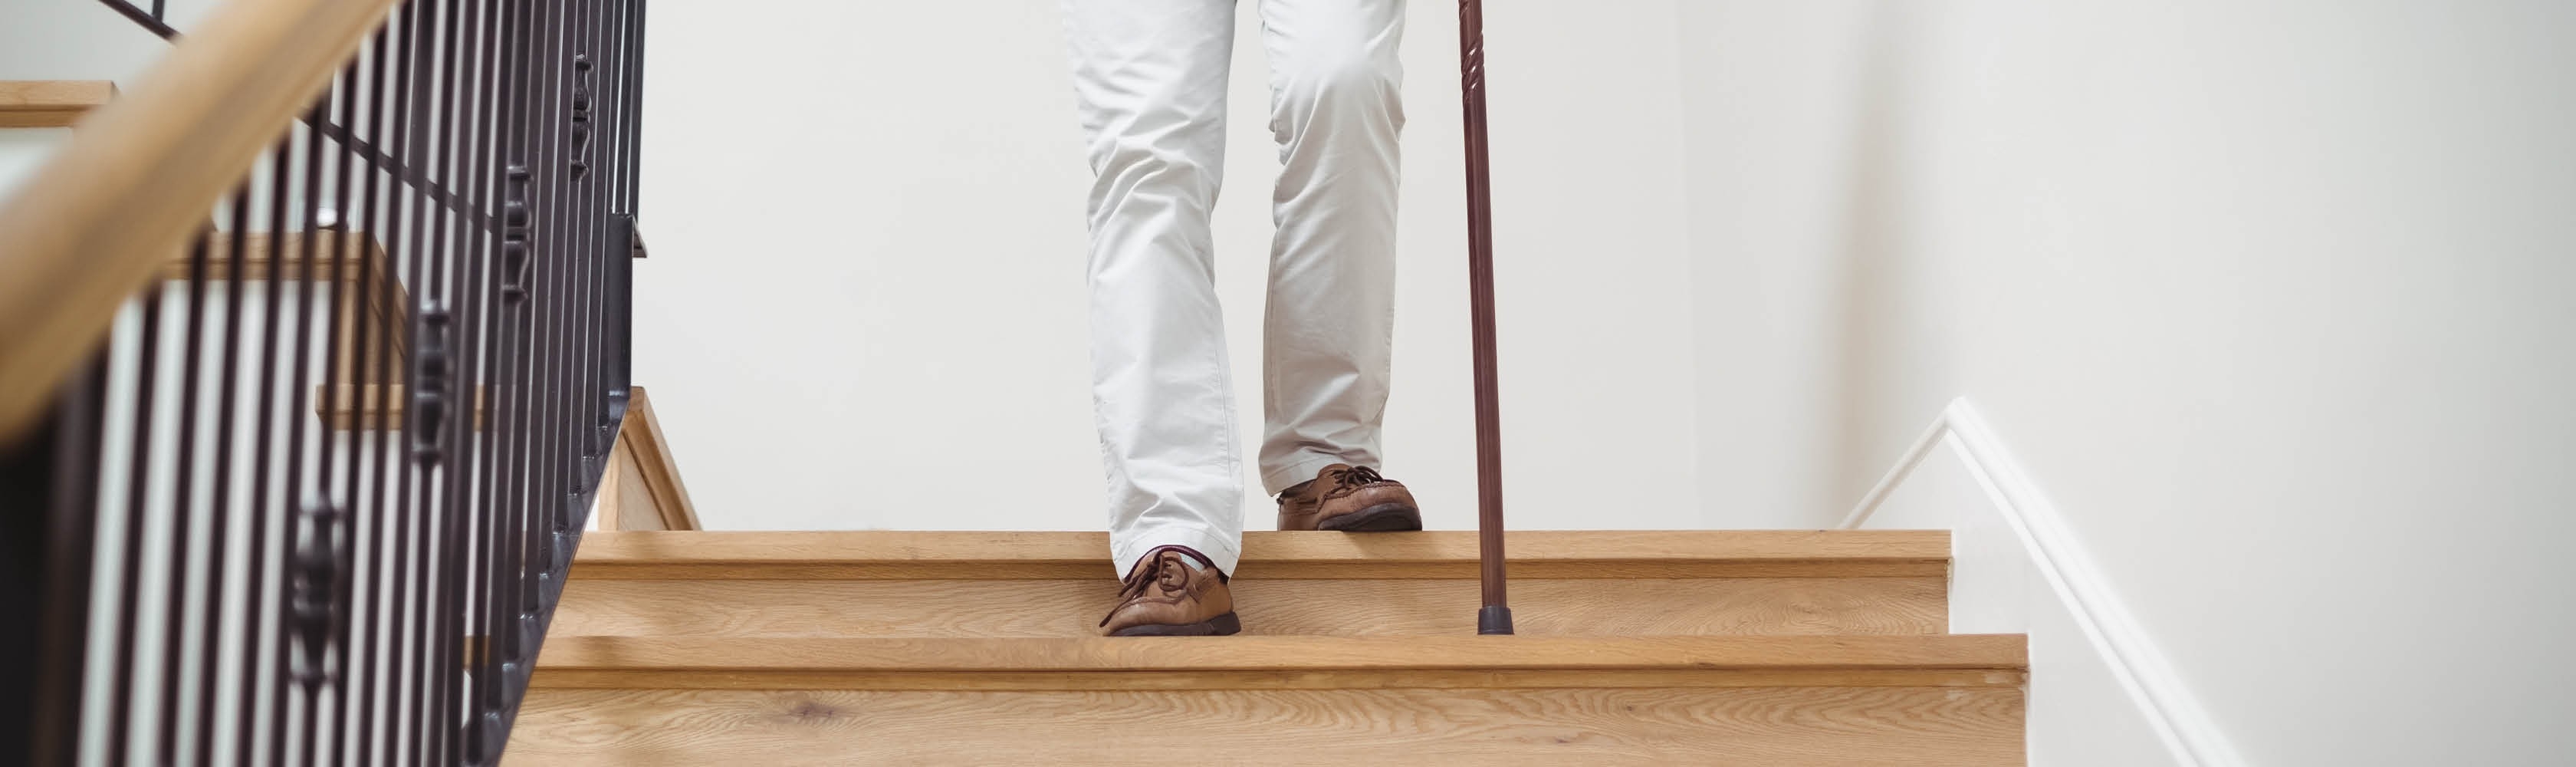 Eine alte Person läuft vorsichtig am Gehtstock die Treppe hinunter